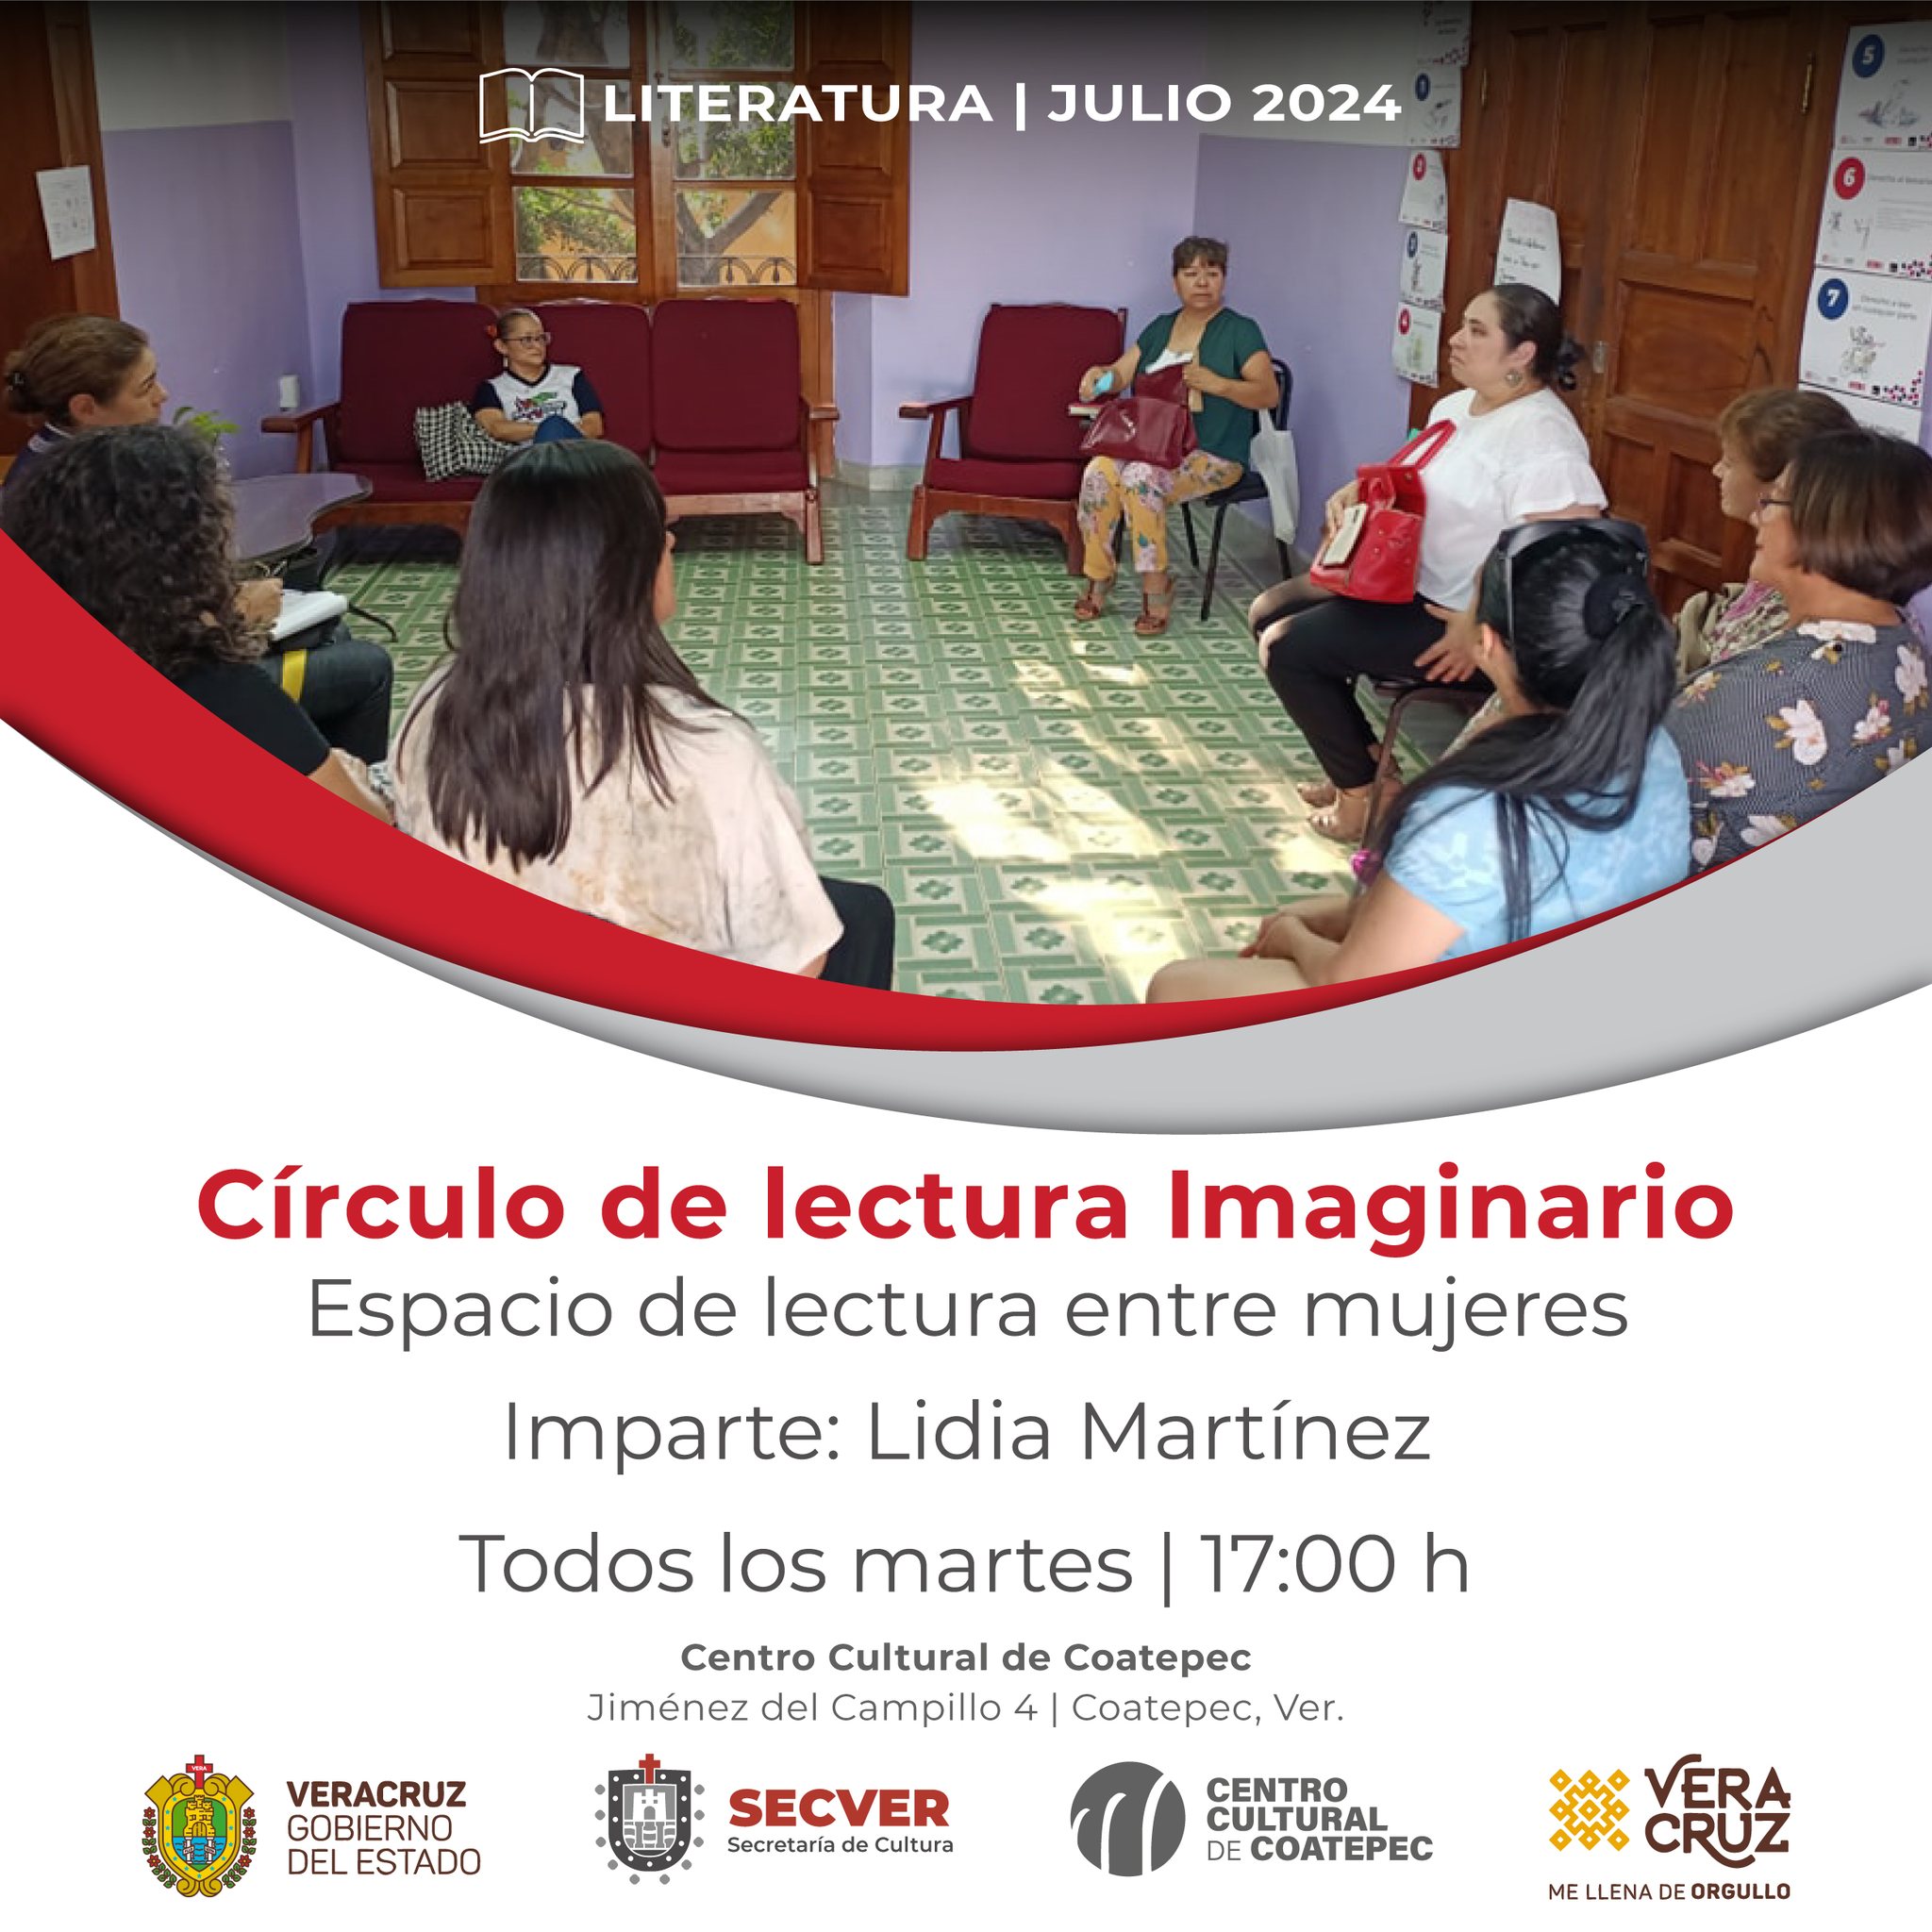 Círculo de lectura imaginario en Centro Cultural de Coatepec